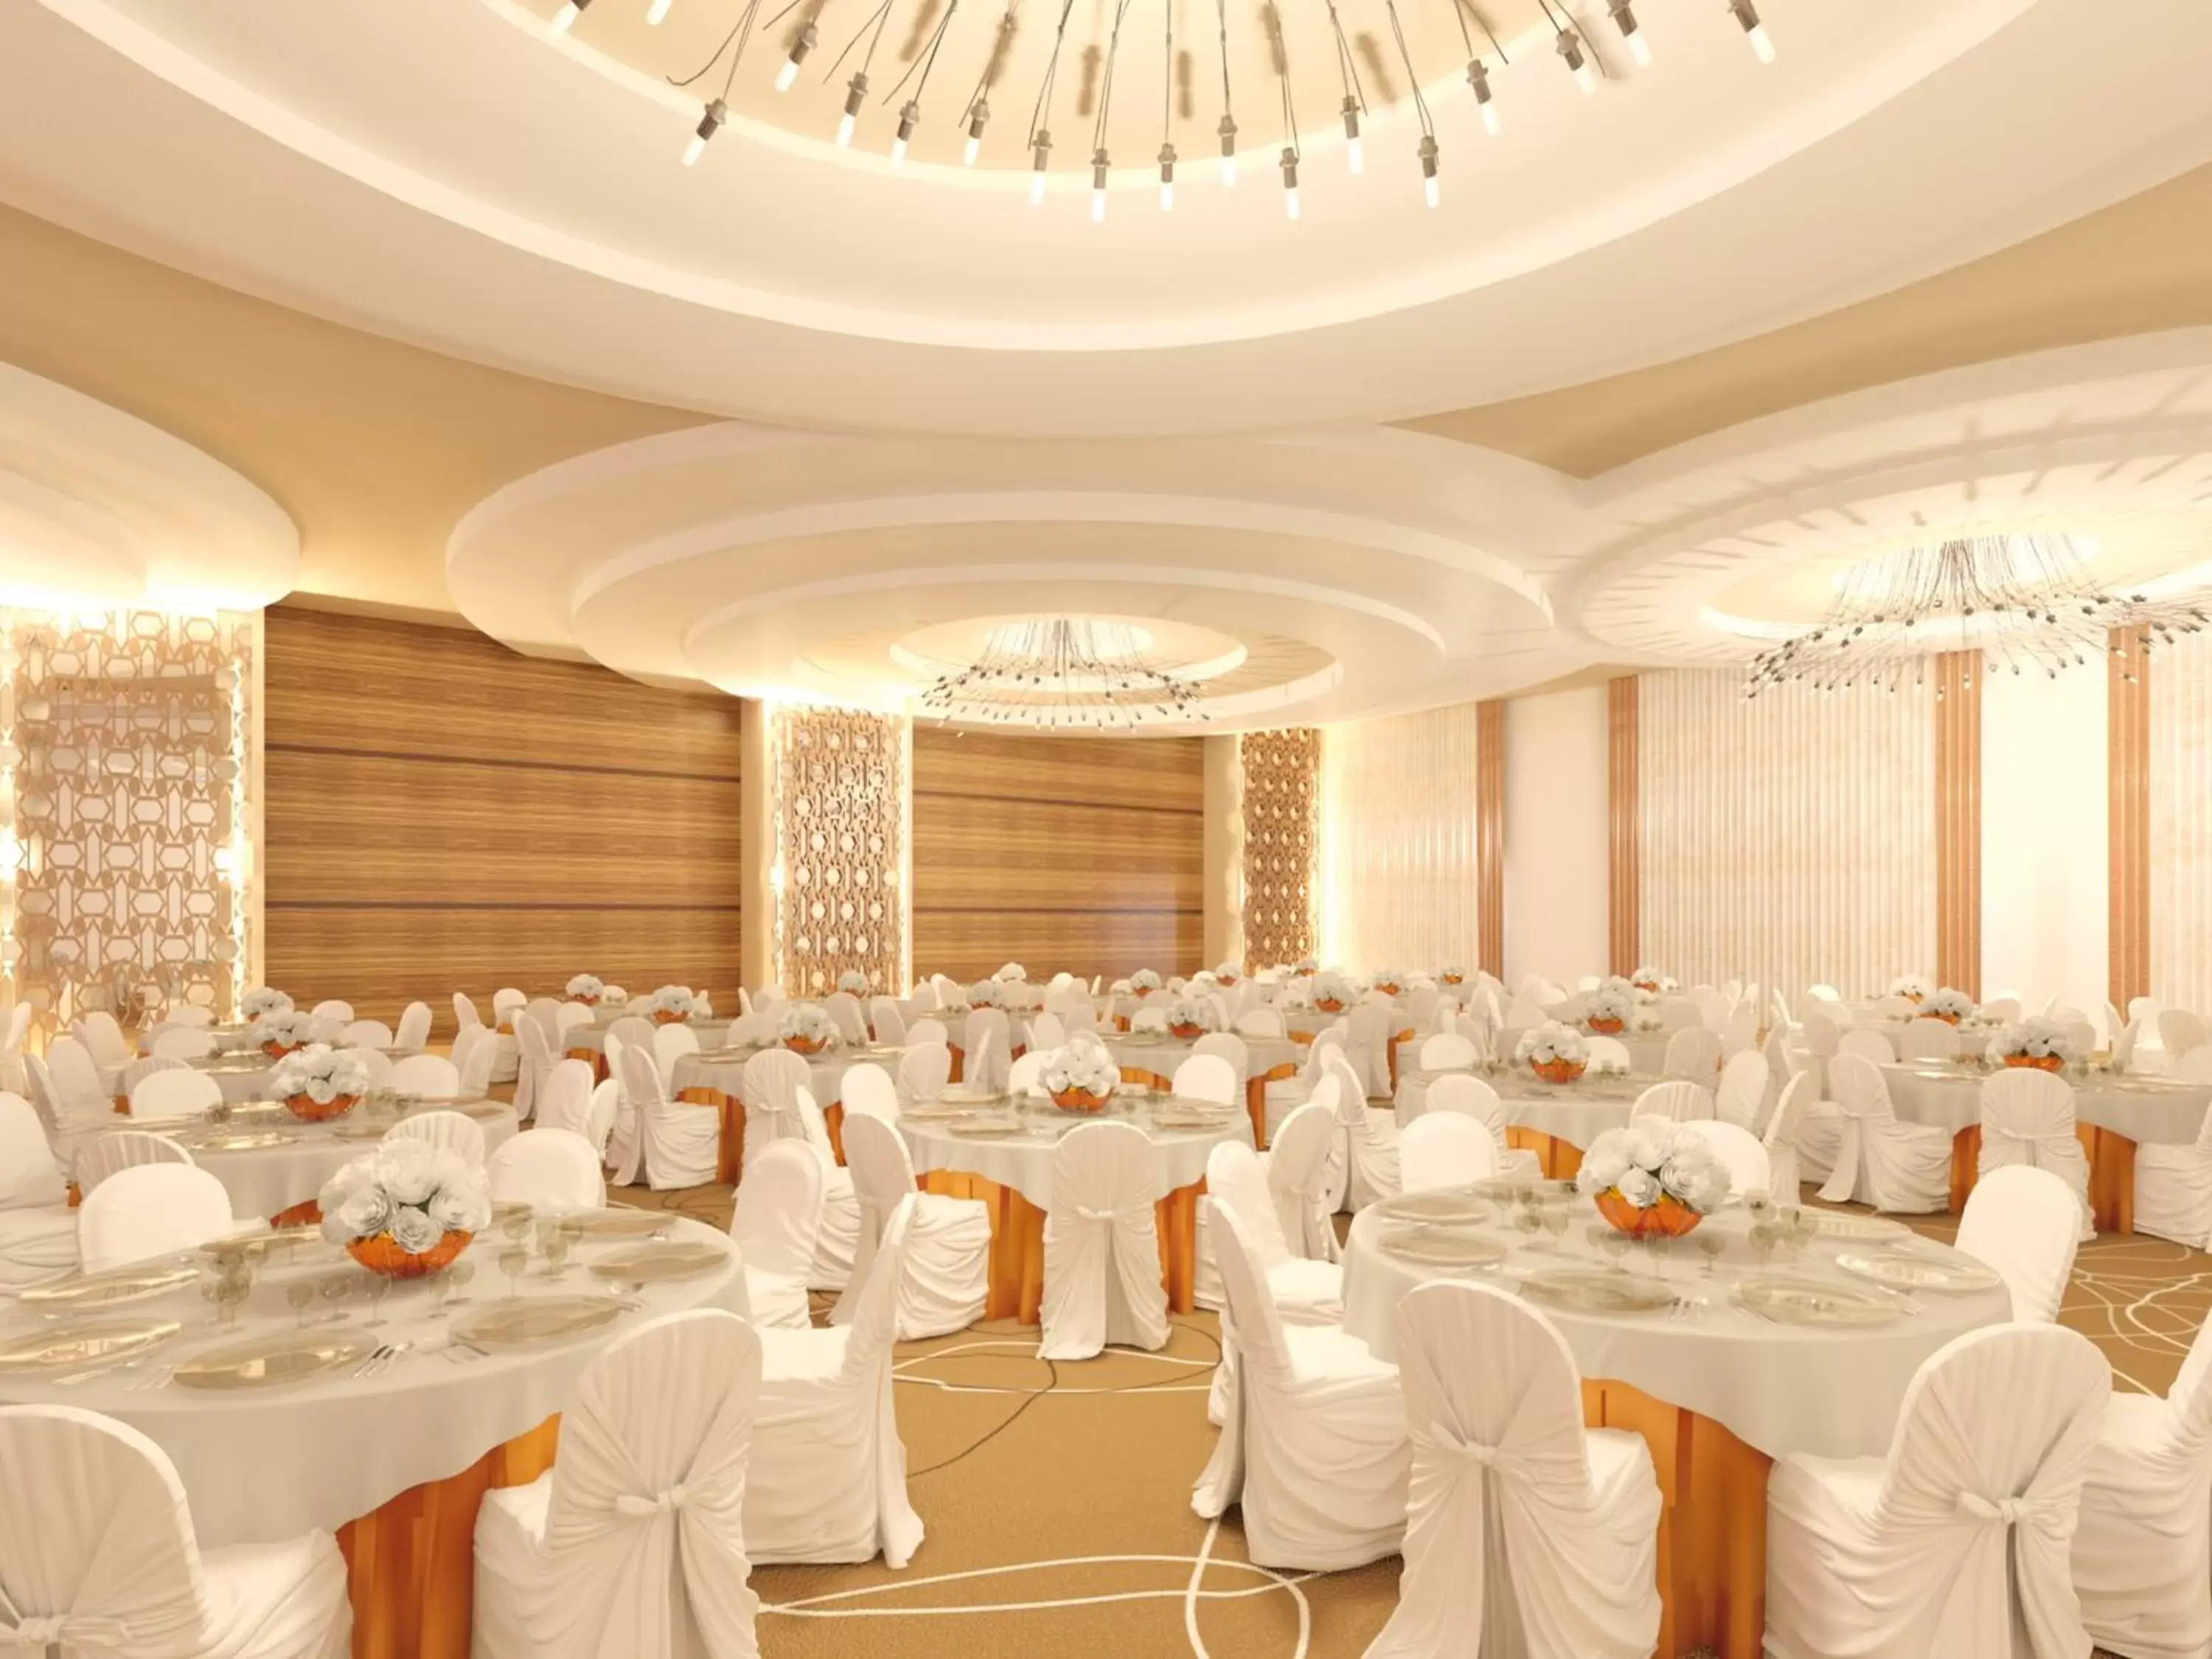 Banquet/Function facilities, Banquet Facilities in Mövenpick Hotel du Lac Tunis